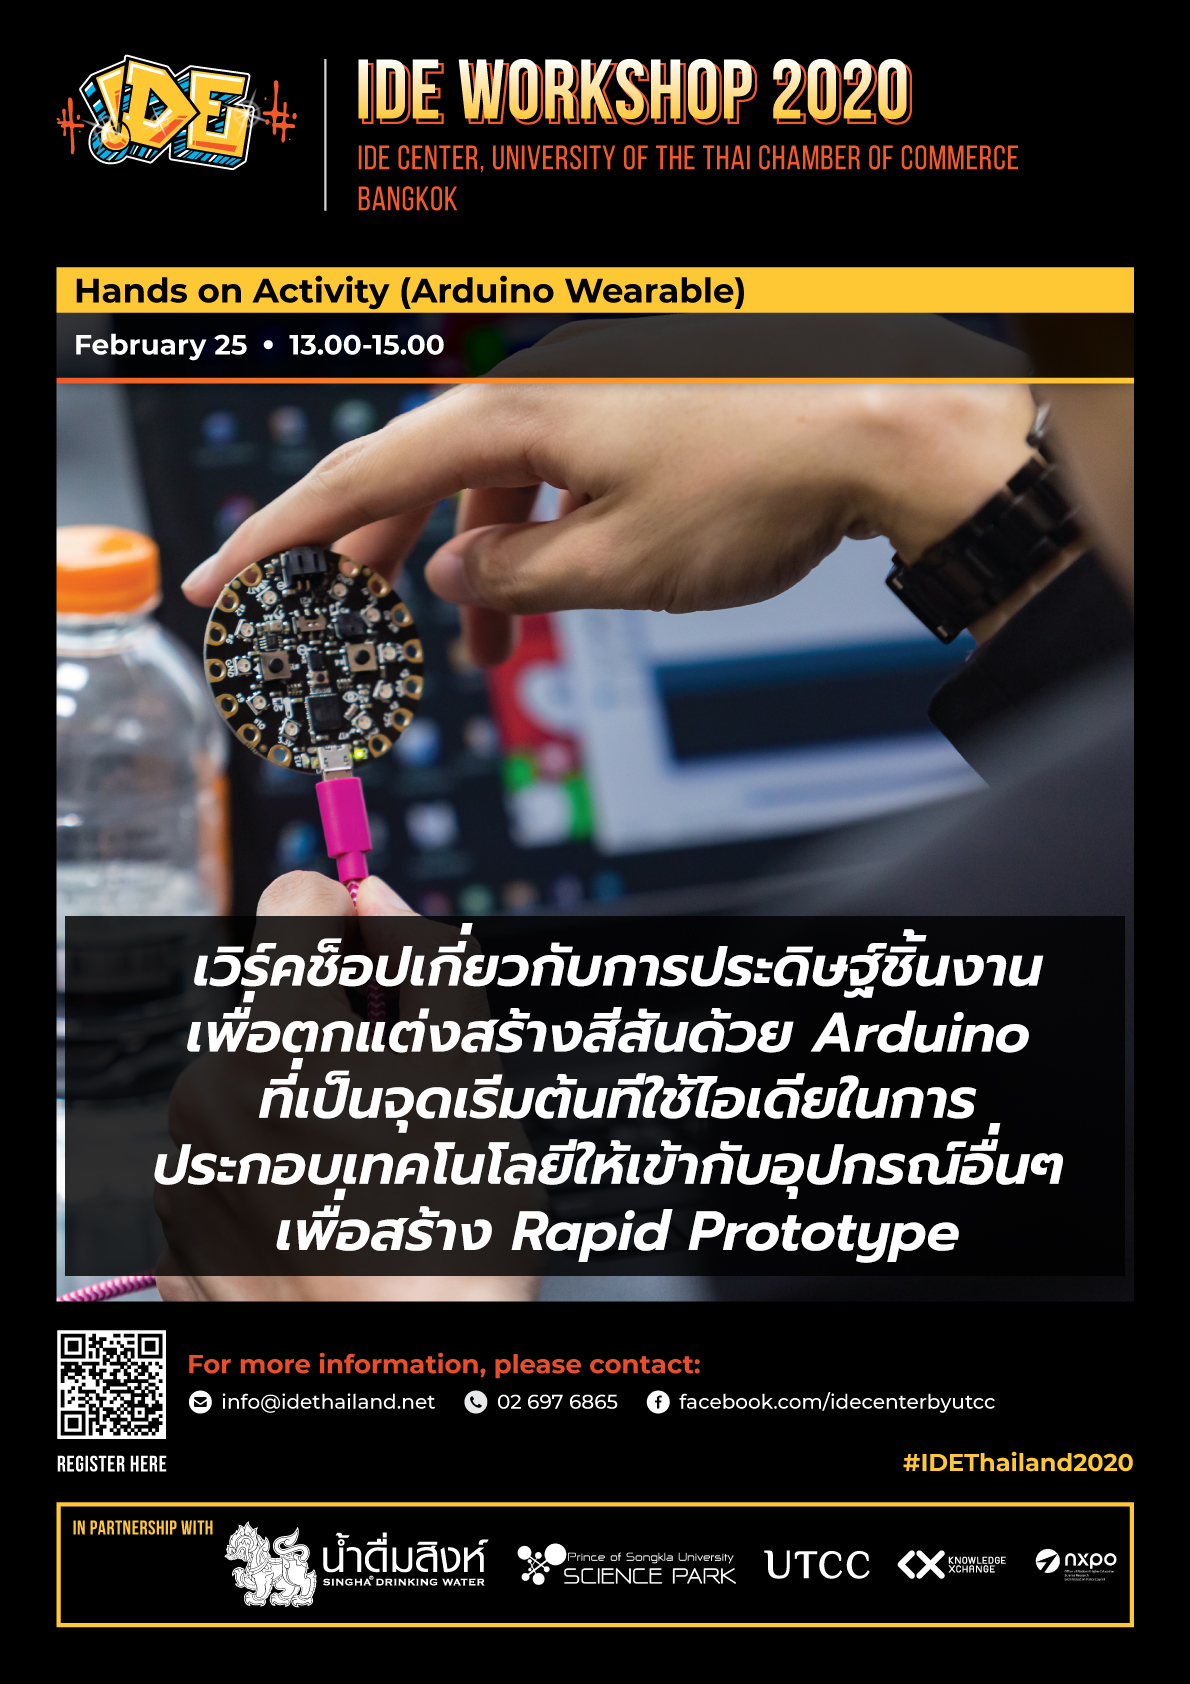 HKIC แนะนำ IDE Workshop ที่น่าสนใจสำหรับนักศึกษา ม.หอการค้าไทย ในเดือนกุมภาพันธ์นี้